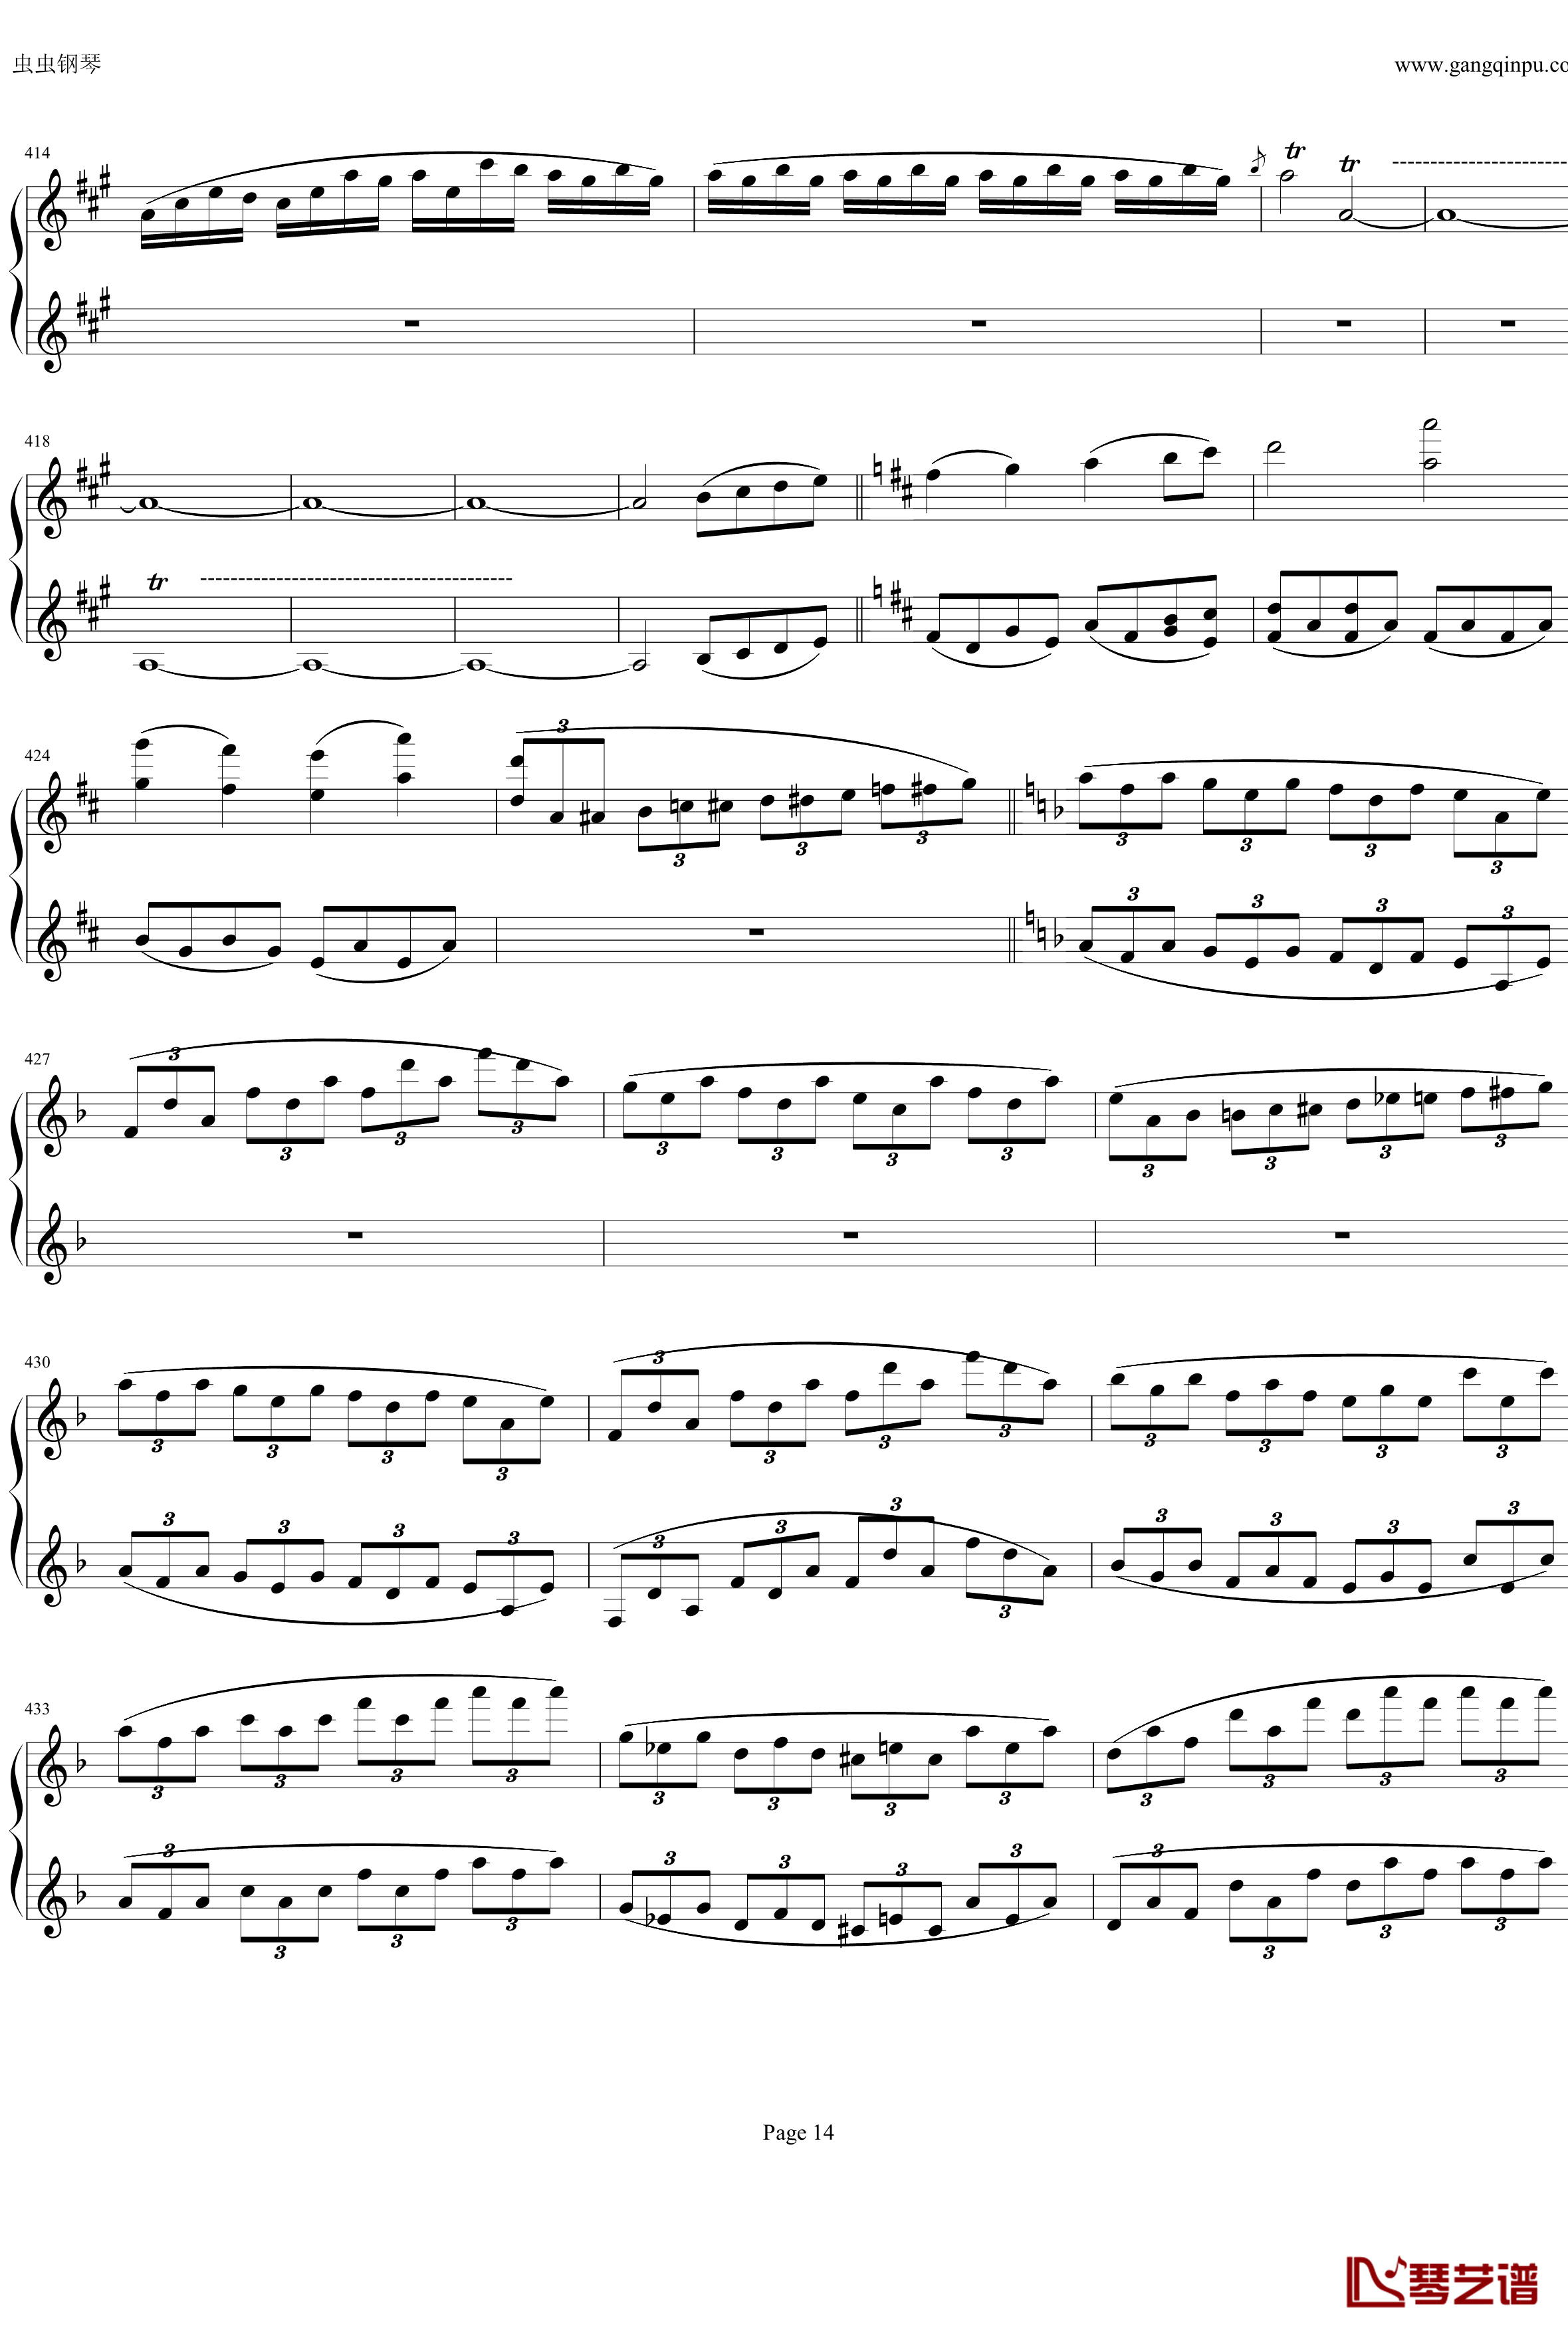 钢琴协奏曲Op61第一乐章钢琴谱-贝多芬-beethoven14